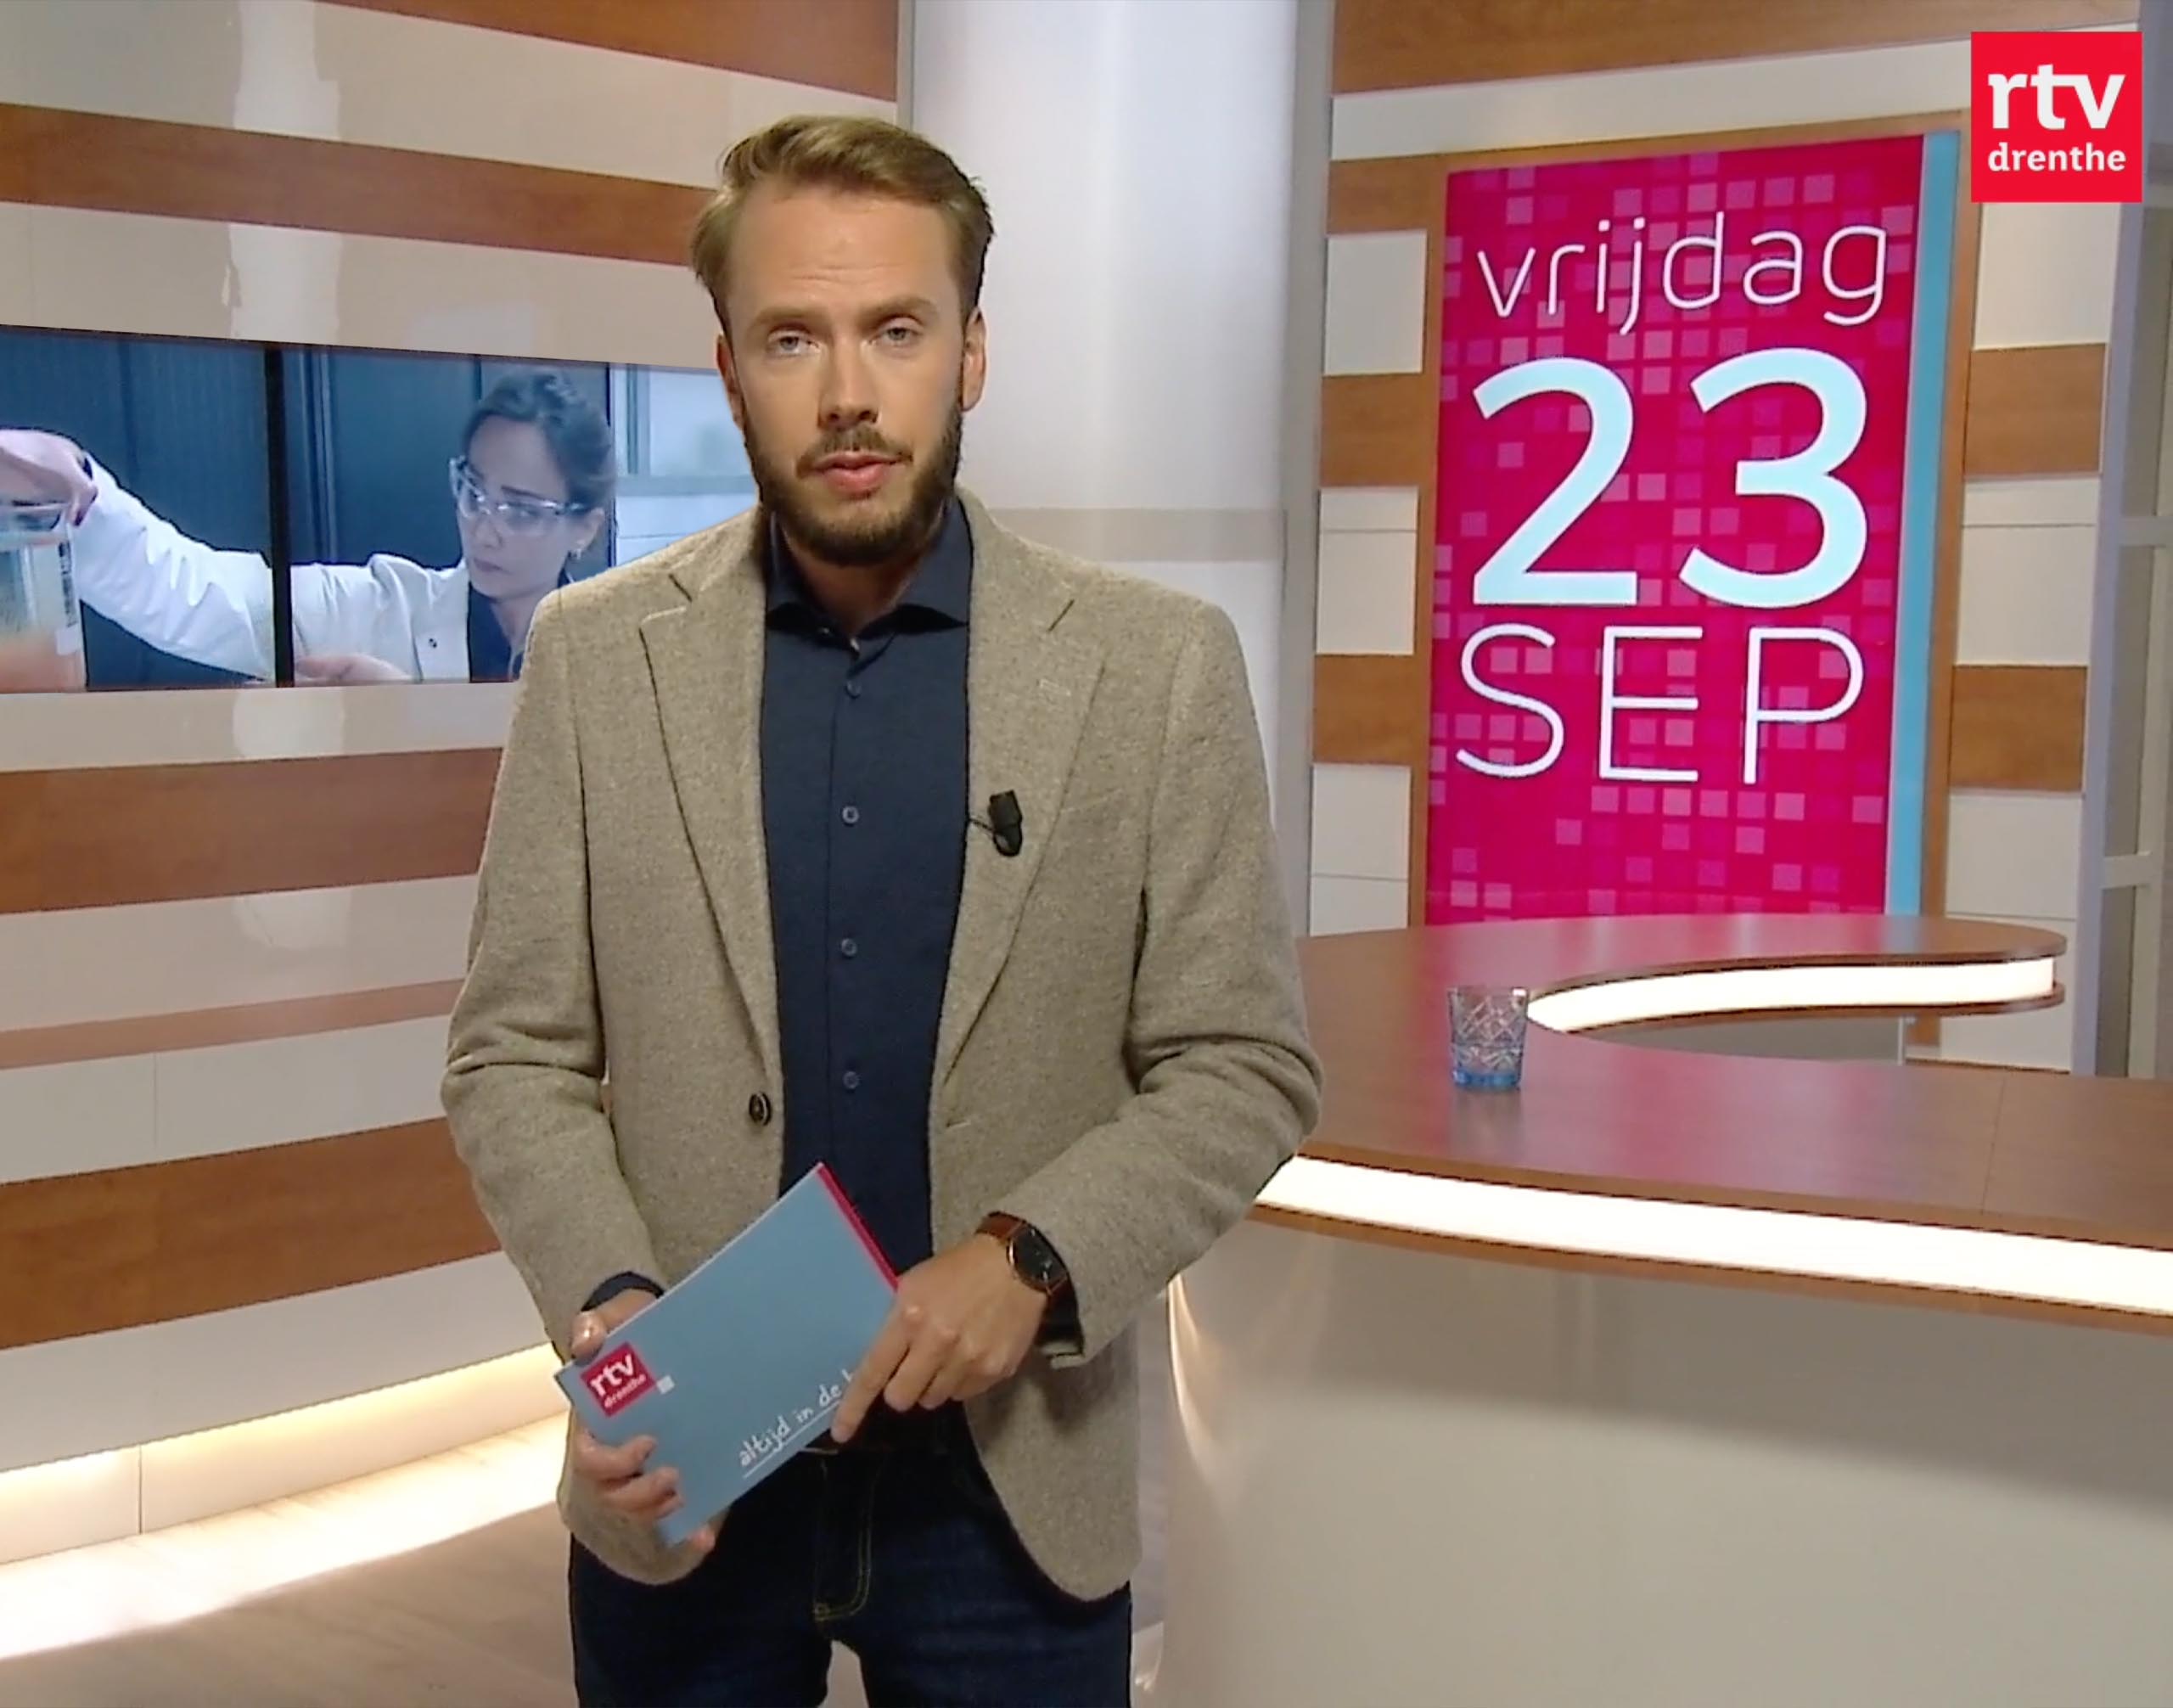 RTV Drenthe Ferr Tech appearance on TV